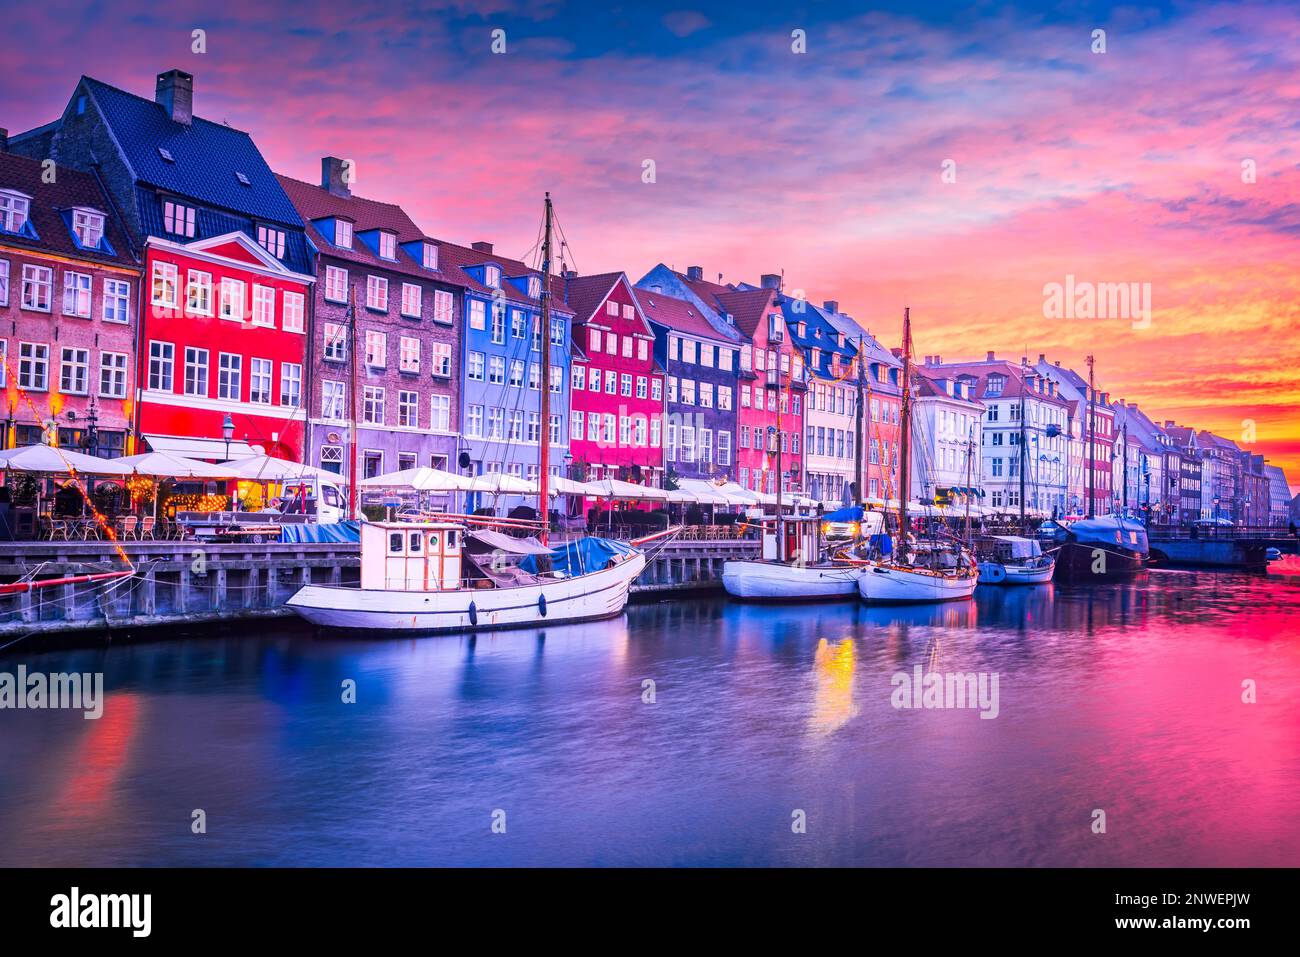 Copenaghen, Danimarca. Bellezza mozzafiato del canale di Nyhavn all'alba, con i suoi iconici edifici colorati e le sue serene riflessioni sull'acqua. Foto Stock